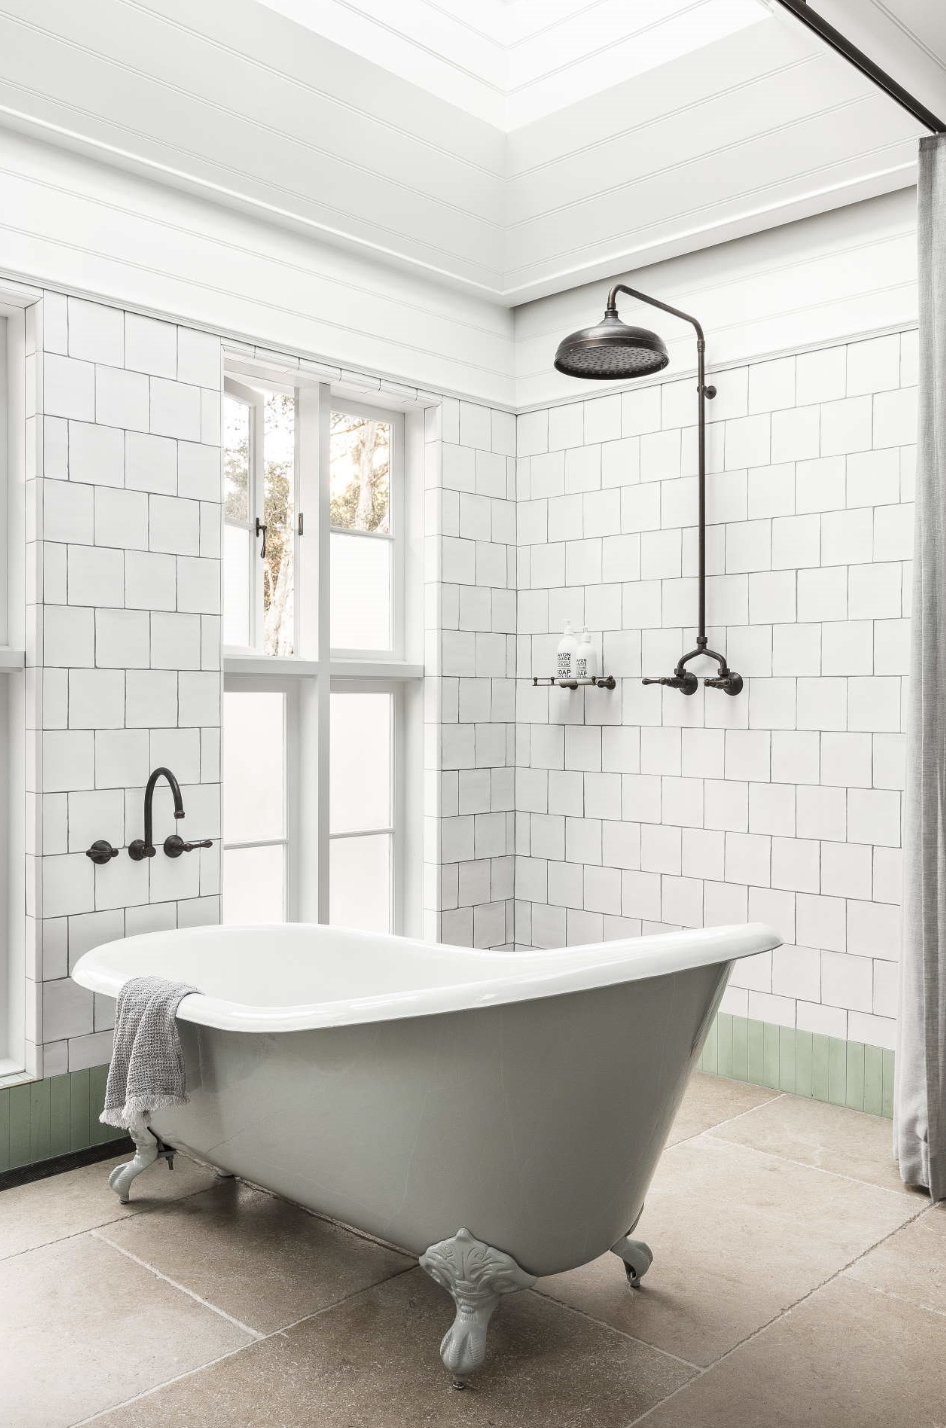 baño de estilo antiguo en blanco, bañera con patas rodeado de ventanas